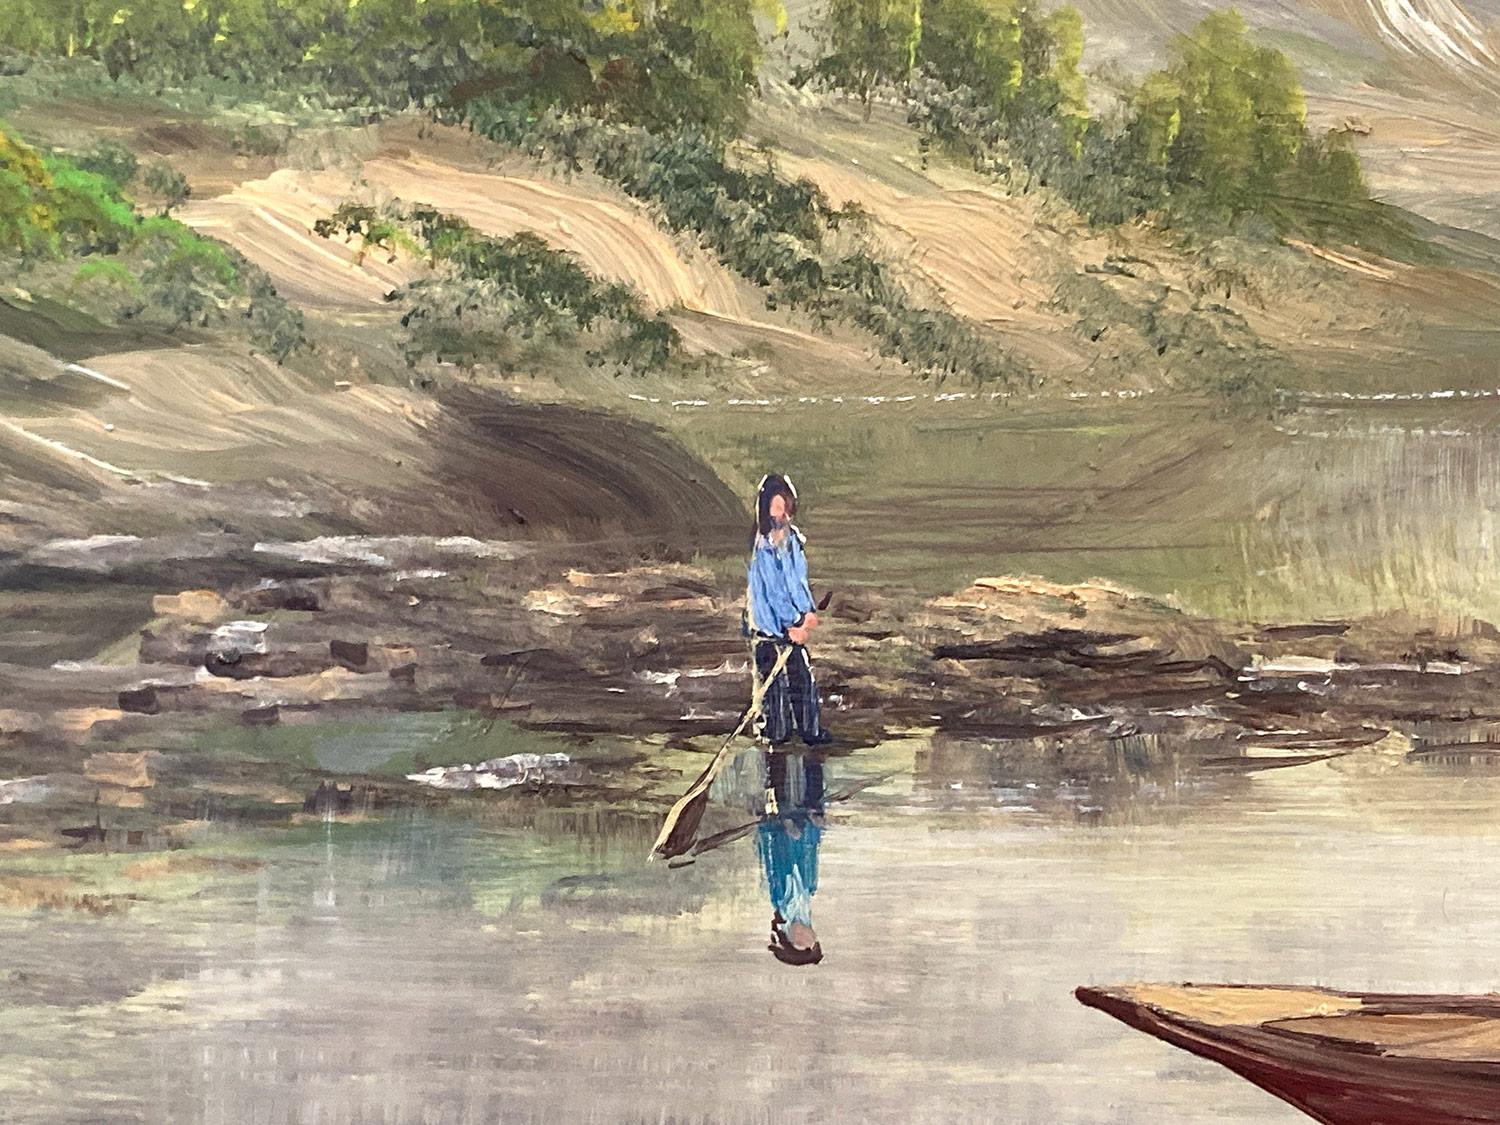 Une belle représentation d'une barque avec des personnages sur le lac. Pour cette merveilleuse représentation, Nemethy utilise une technique fine qui représente les personnages de manière miniature. Avec ses couleurs joyeuses, cette pièce est